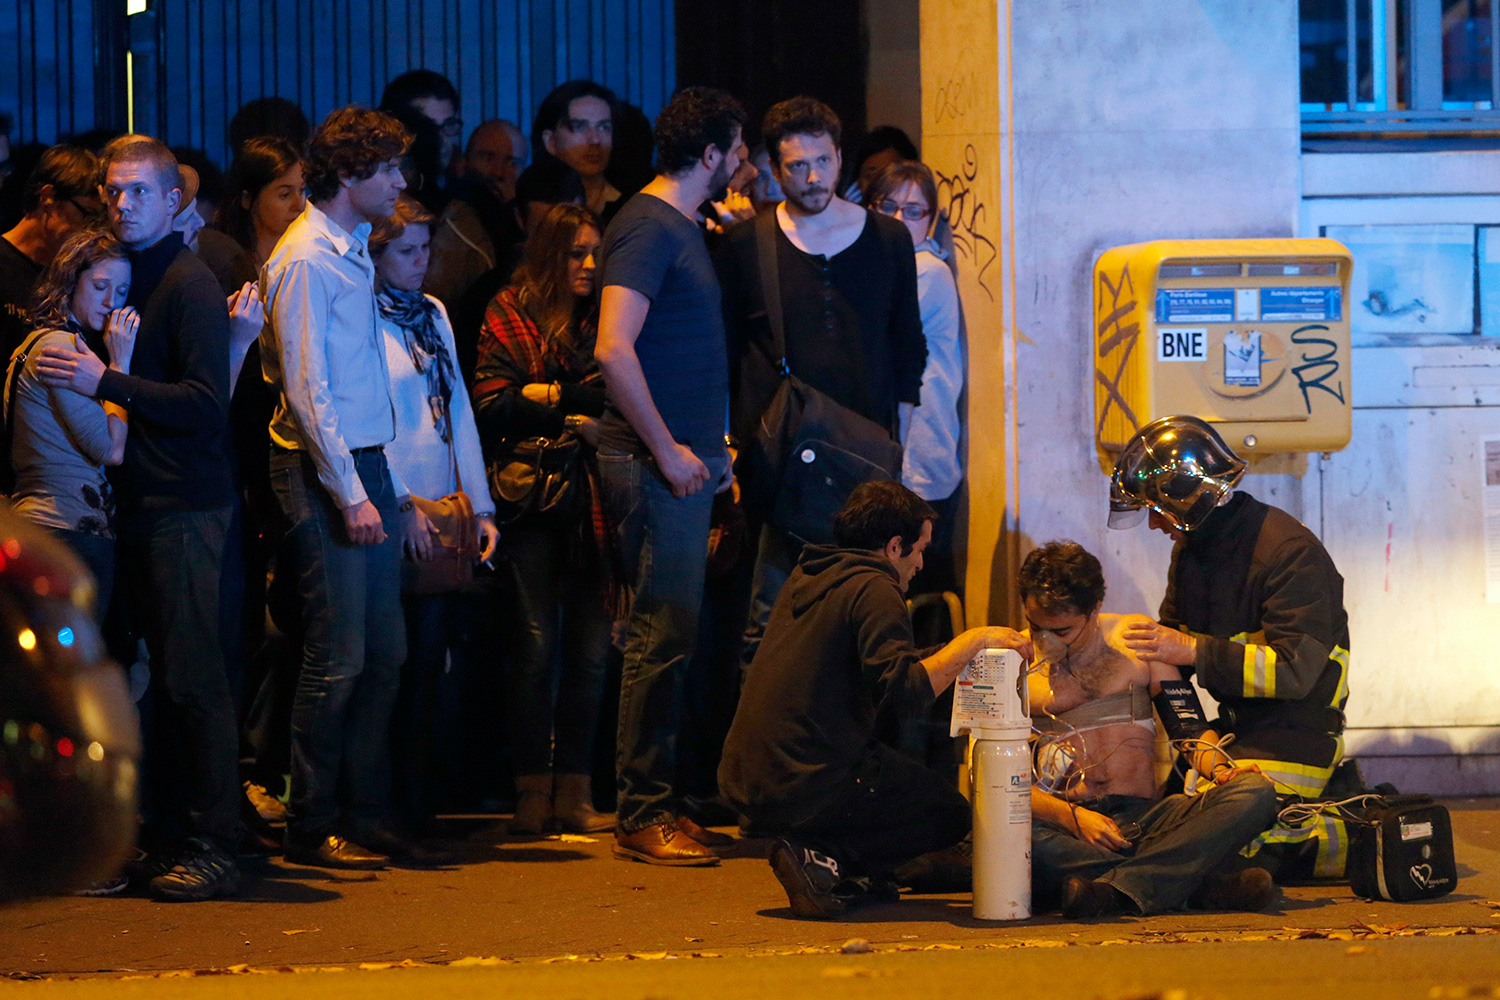 Una fotoperiodista se enfrenta a cargos penales por una foto de los ataques de París